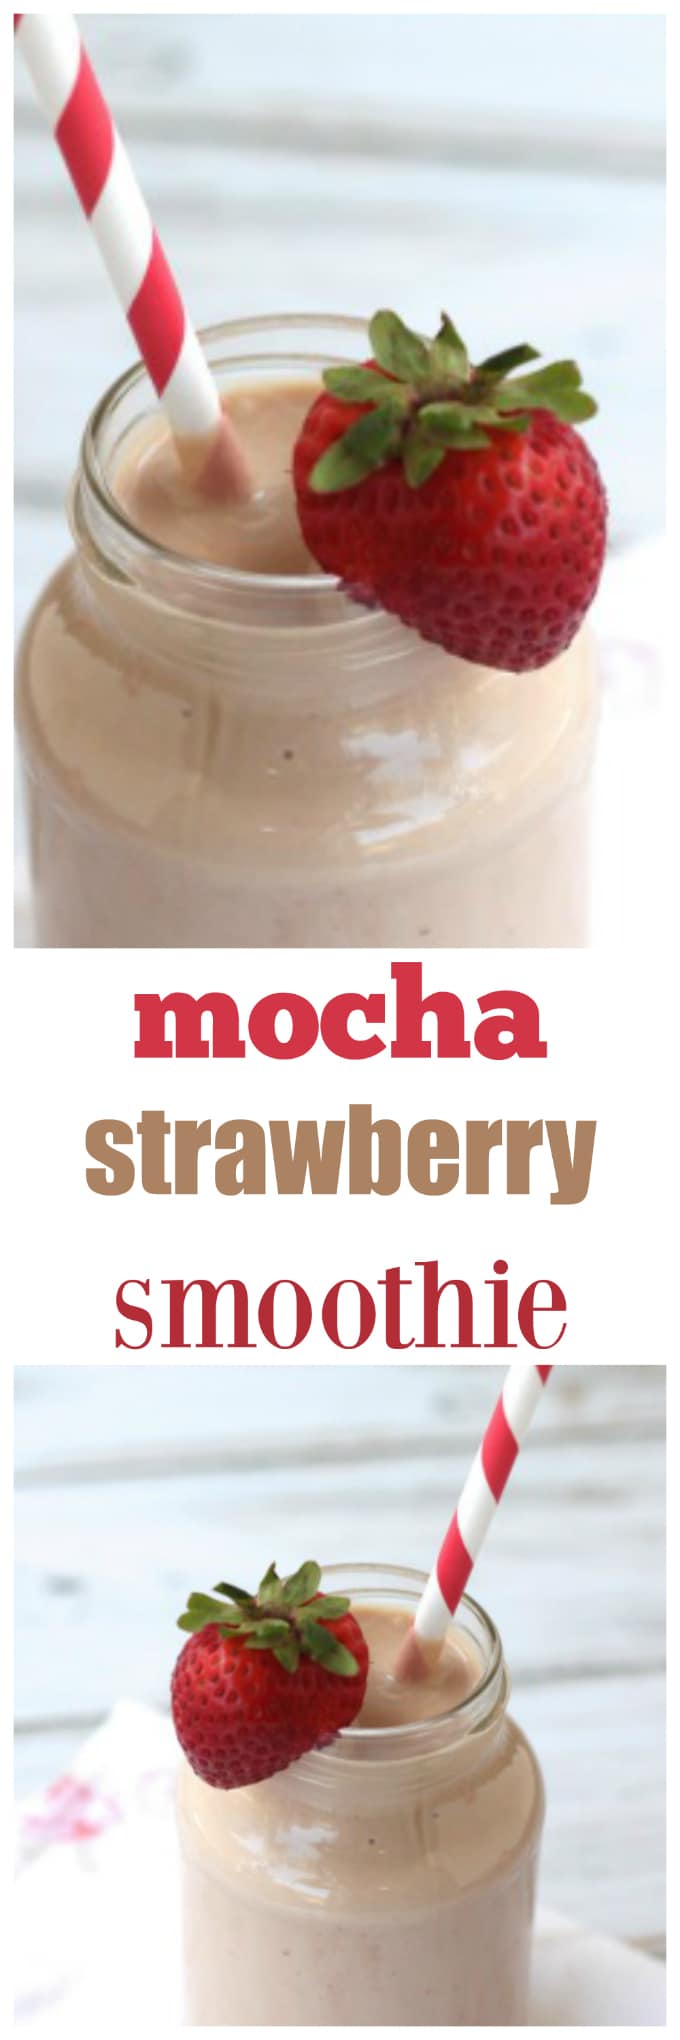 mocha strawberry smoothie @createdbydiane